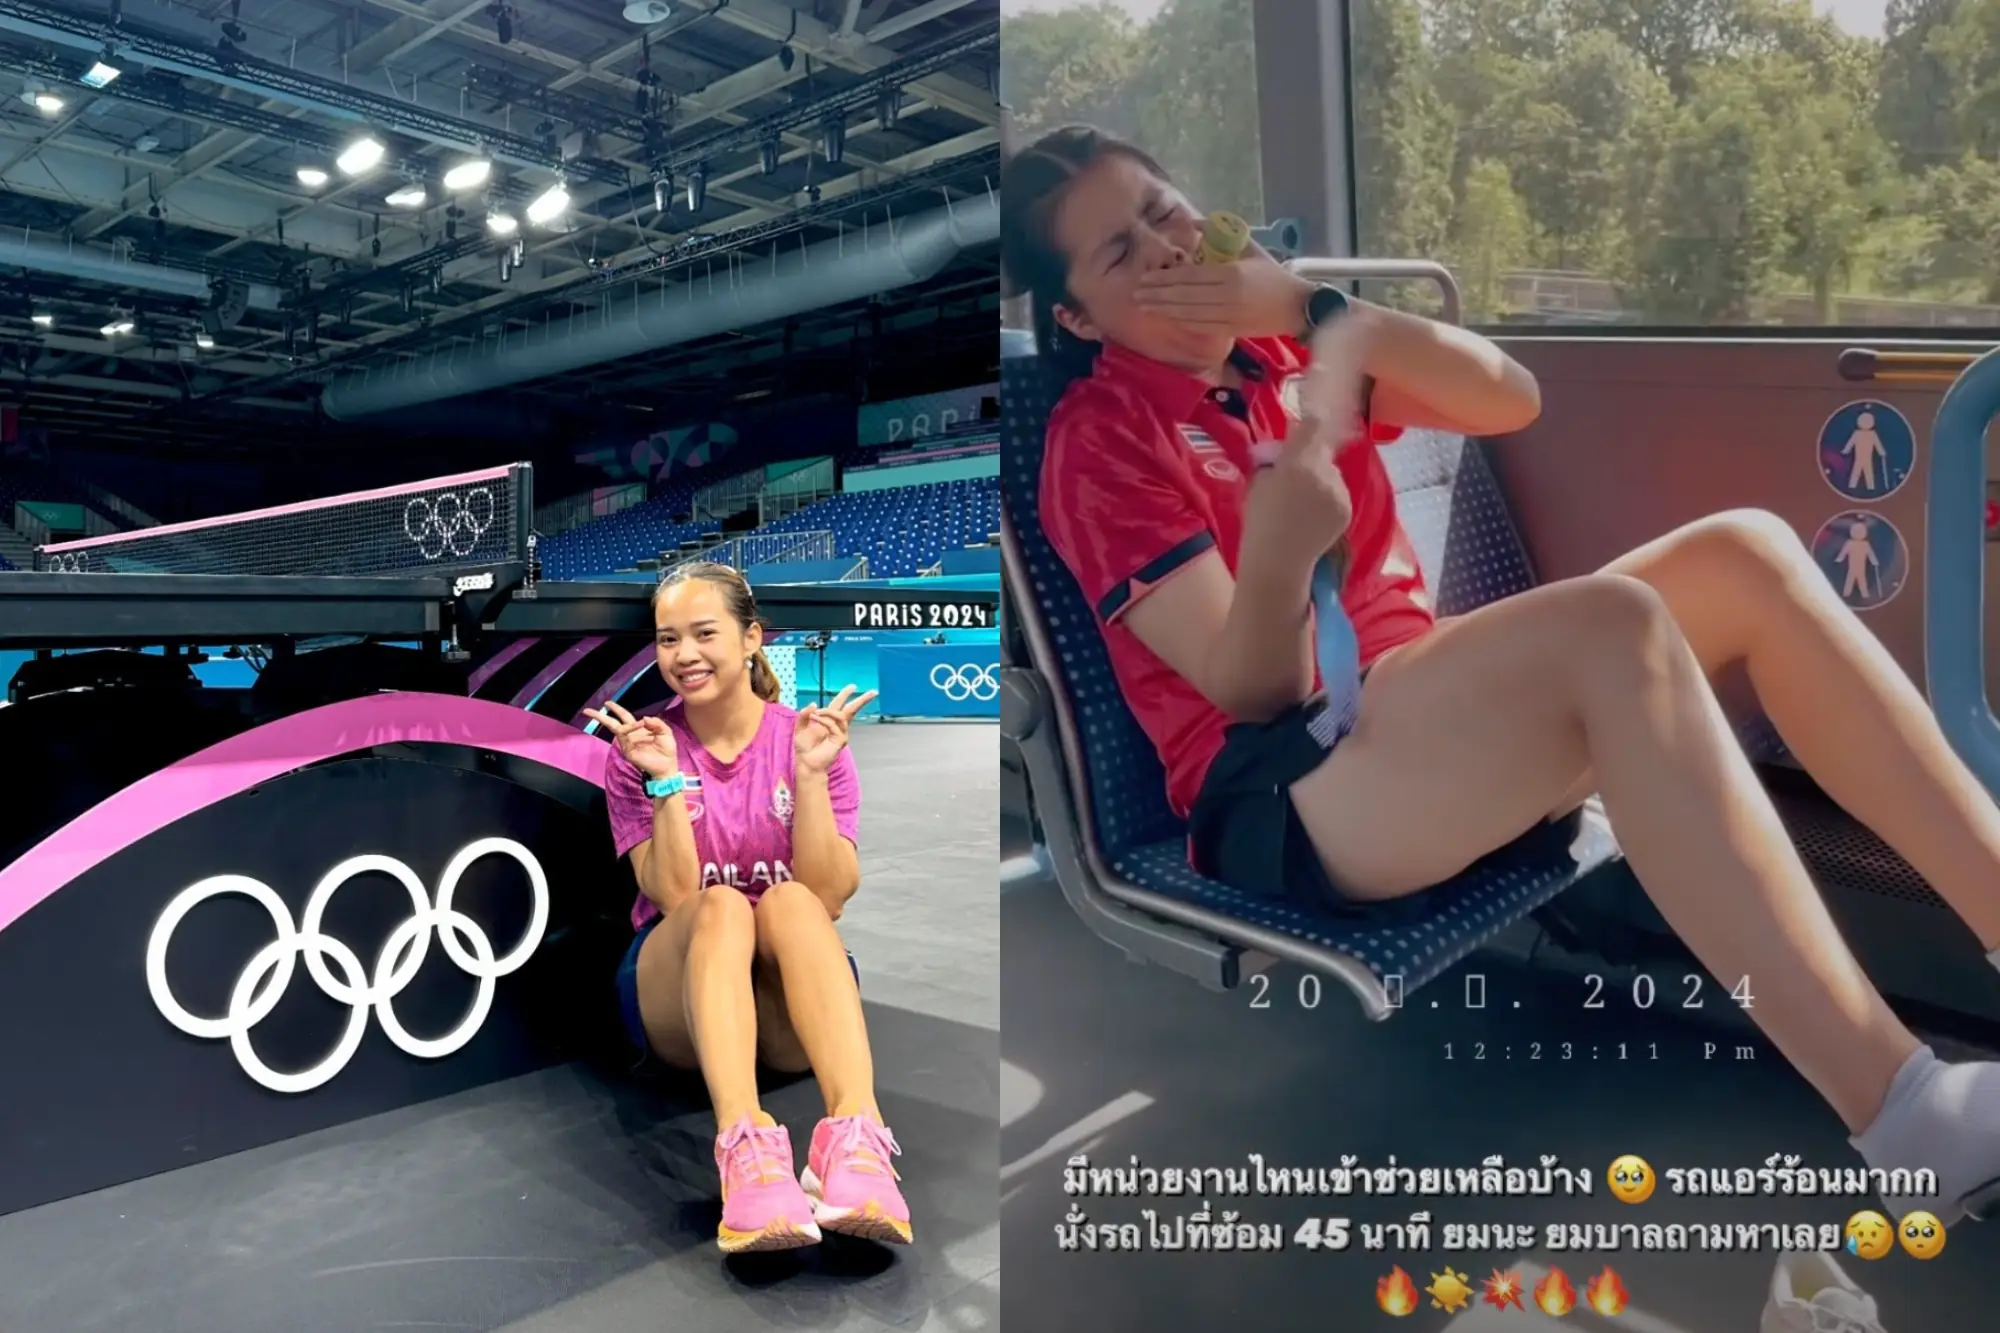 泰國奧運選手羨慕中國隊待遇 社群貼文引熱議